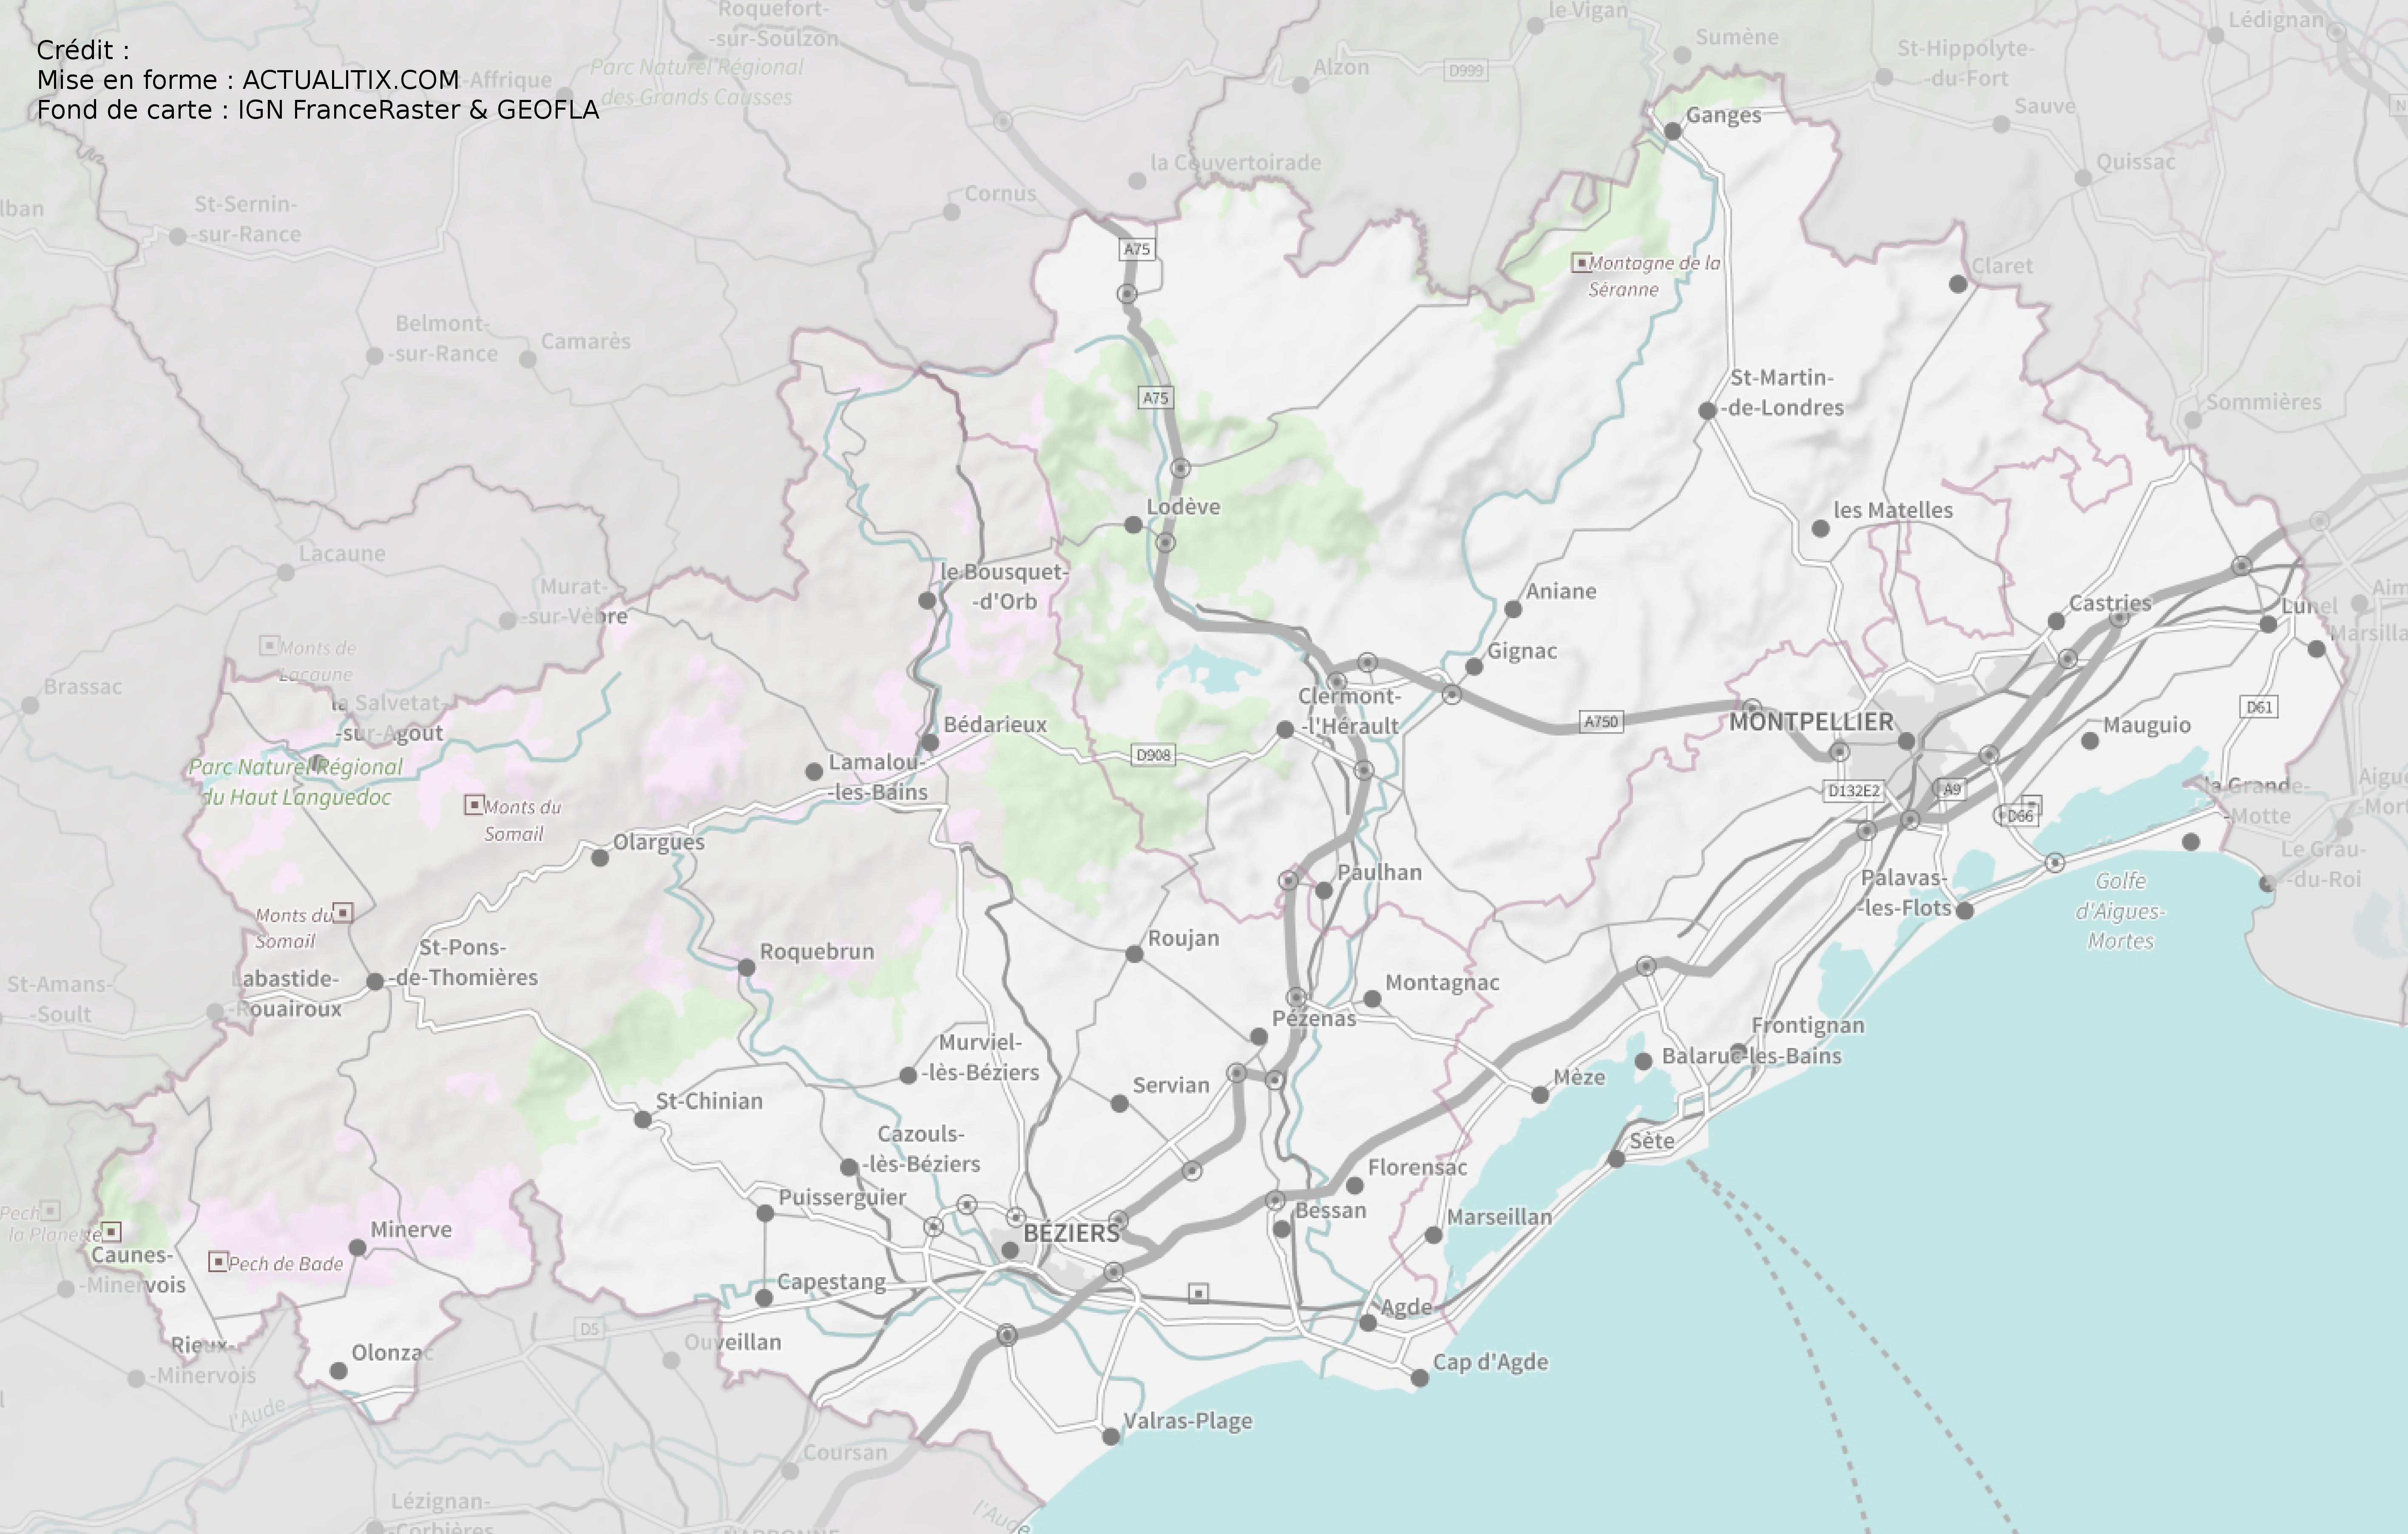 Carte de l'Hérault - Hérault carte du département 34 - villes, tourisme...